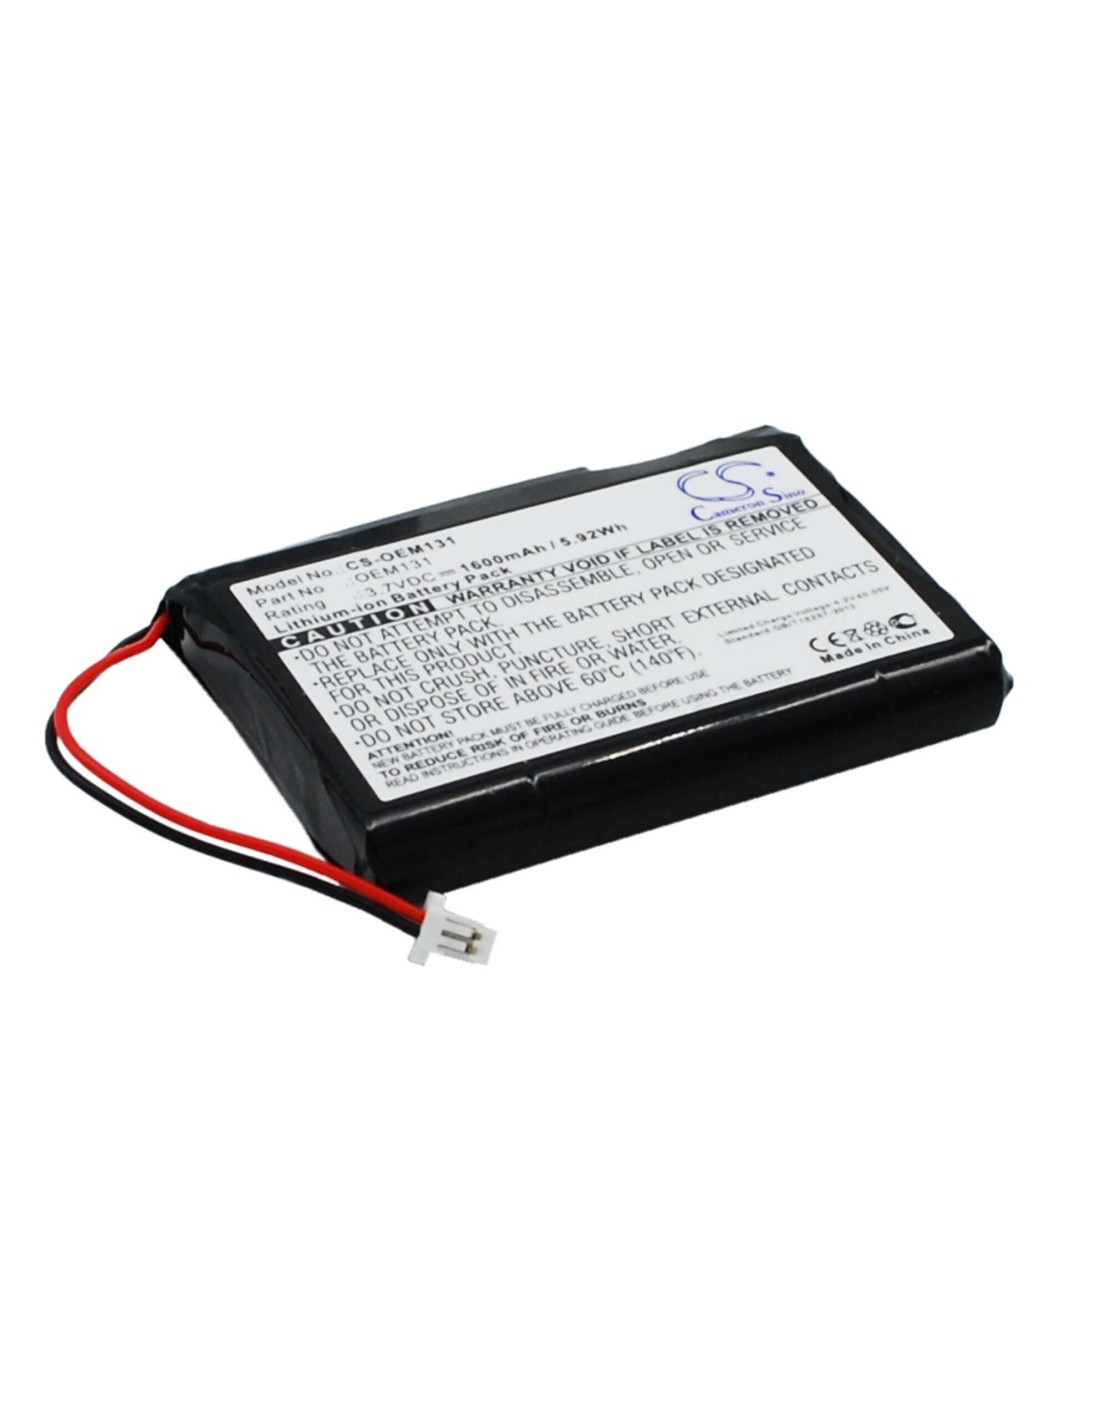 Battery for Cameron Sino, Custom Battery Packs 3.7V, 1600mAh - 5.92Wh